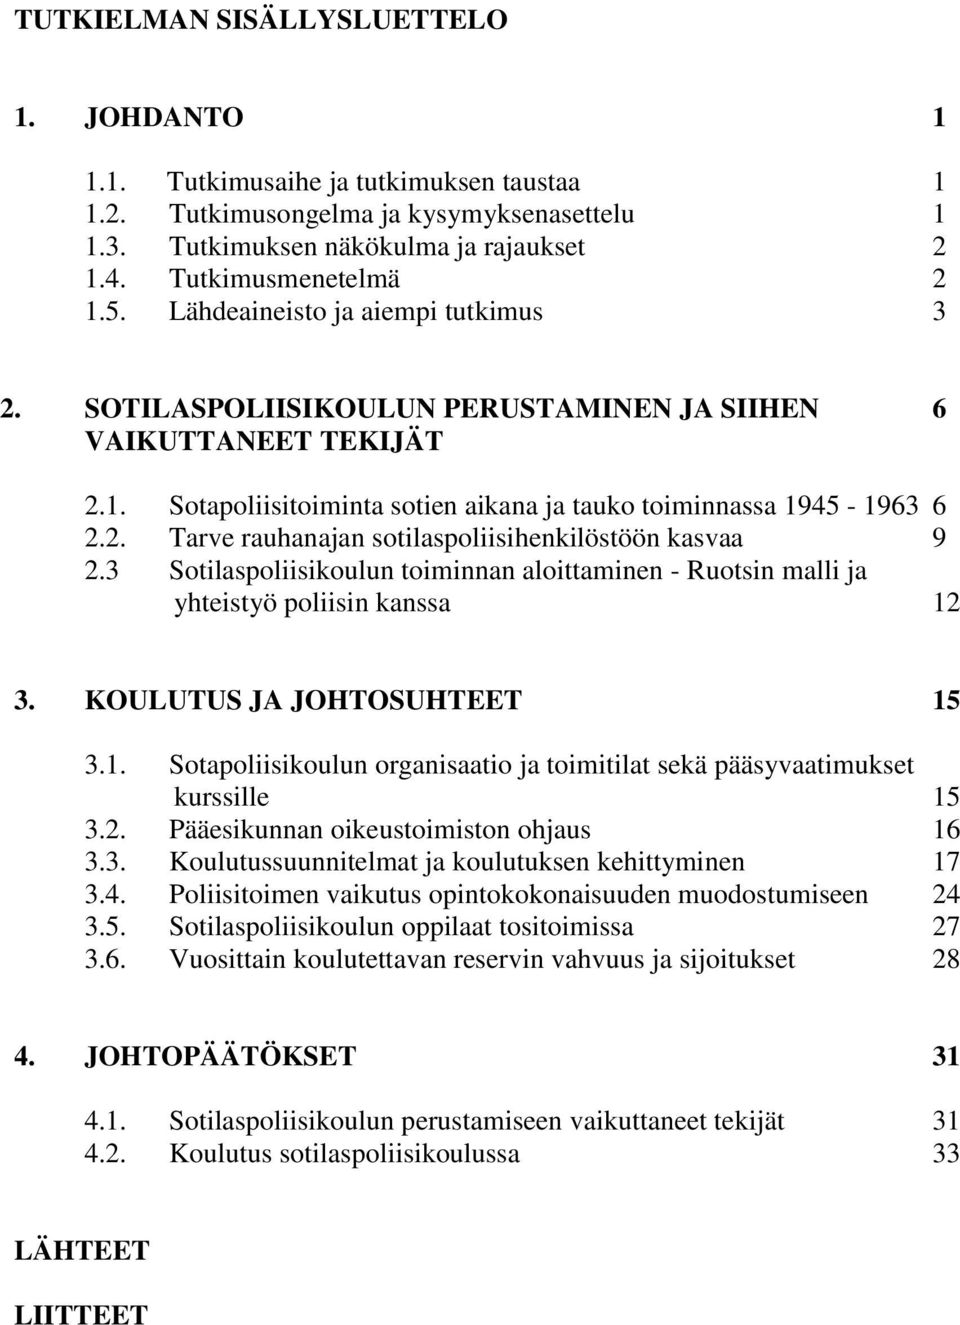 3 Sotilaspoliisikoulun toiminnan aloittaminen - Ruotsin malli ja yhteistyö poliisin kanssa 12 3. KOULUTUS JA JOHTOSUHTEET 15 3.1. Sotapoliisikoulun organisaatio ja toimitilat sekä pääsyvaatimukset kurssille 15 3.